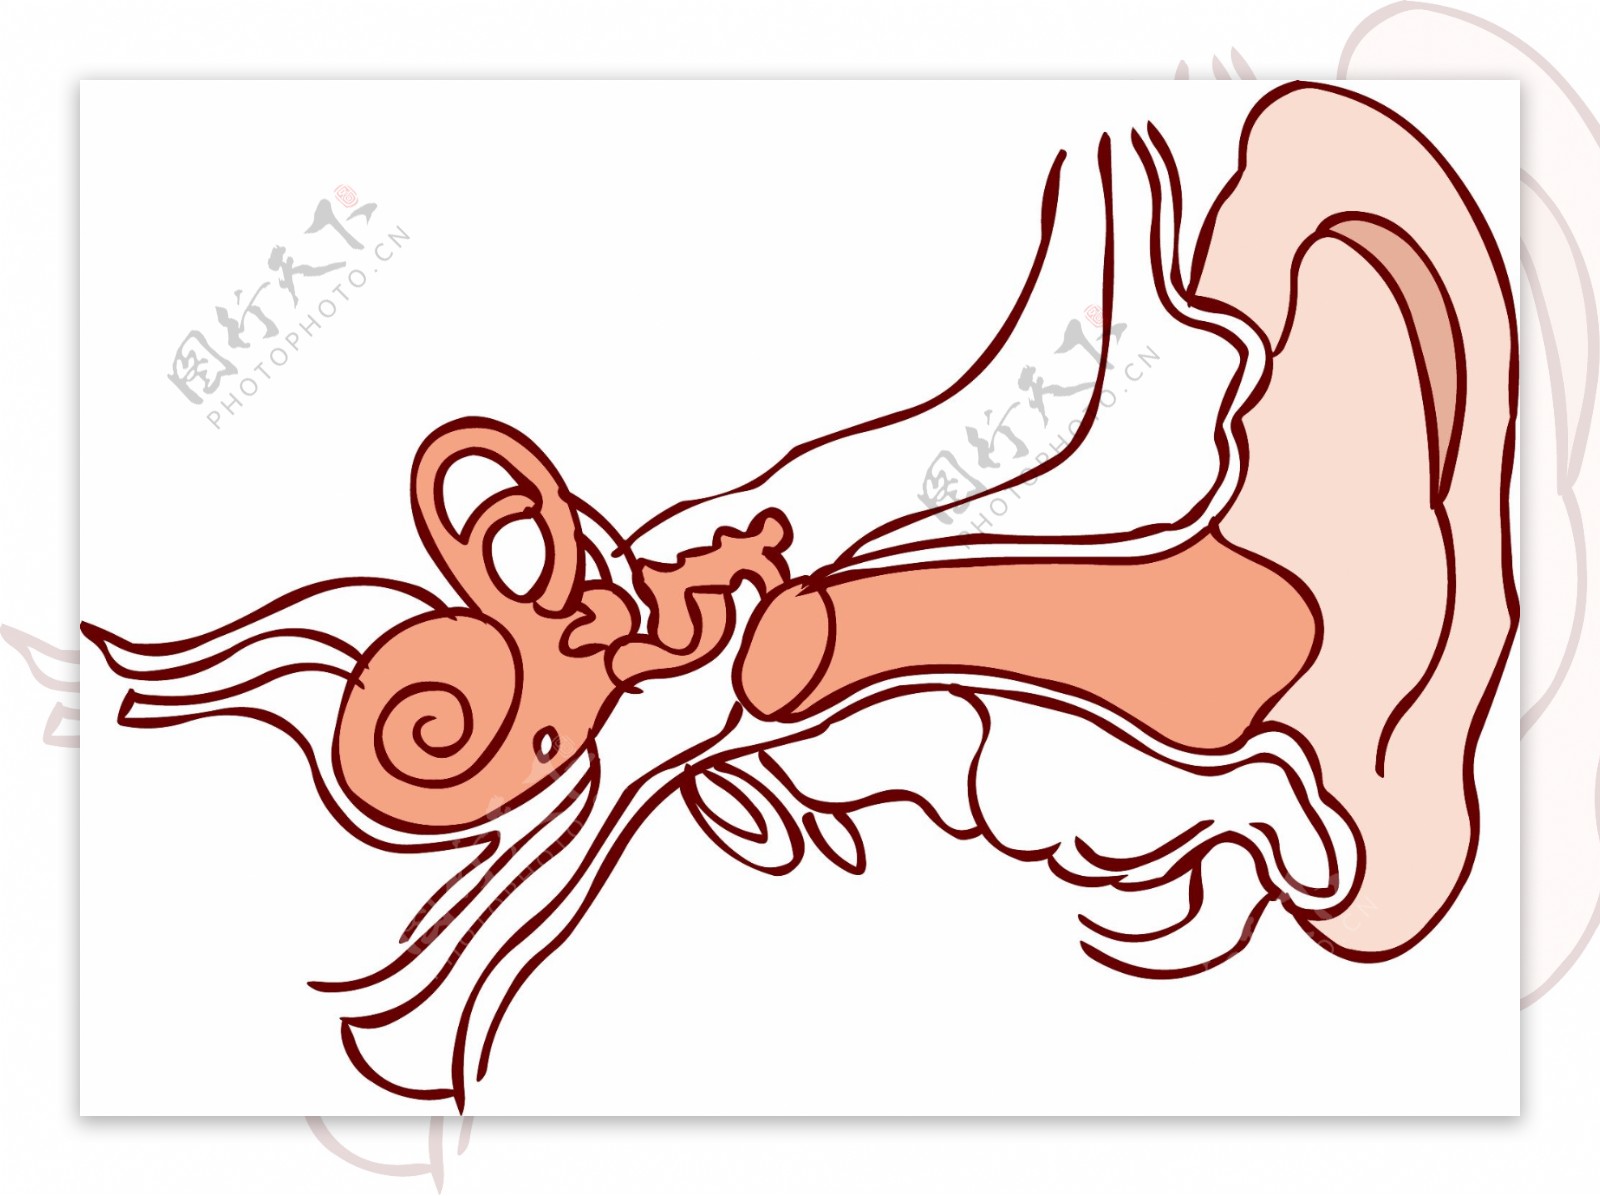 手绘人体器官人体五官耳朵线条结构